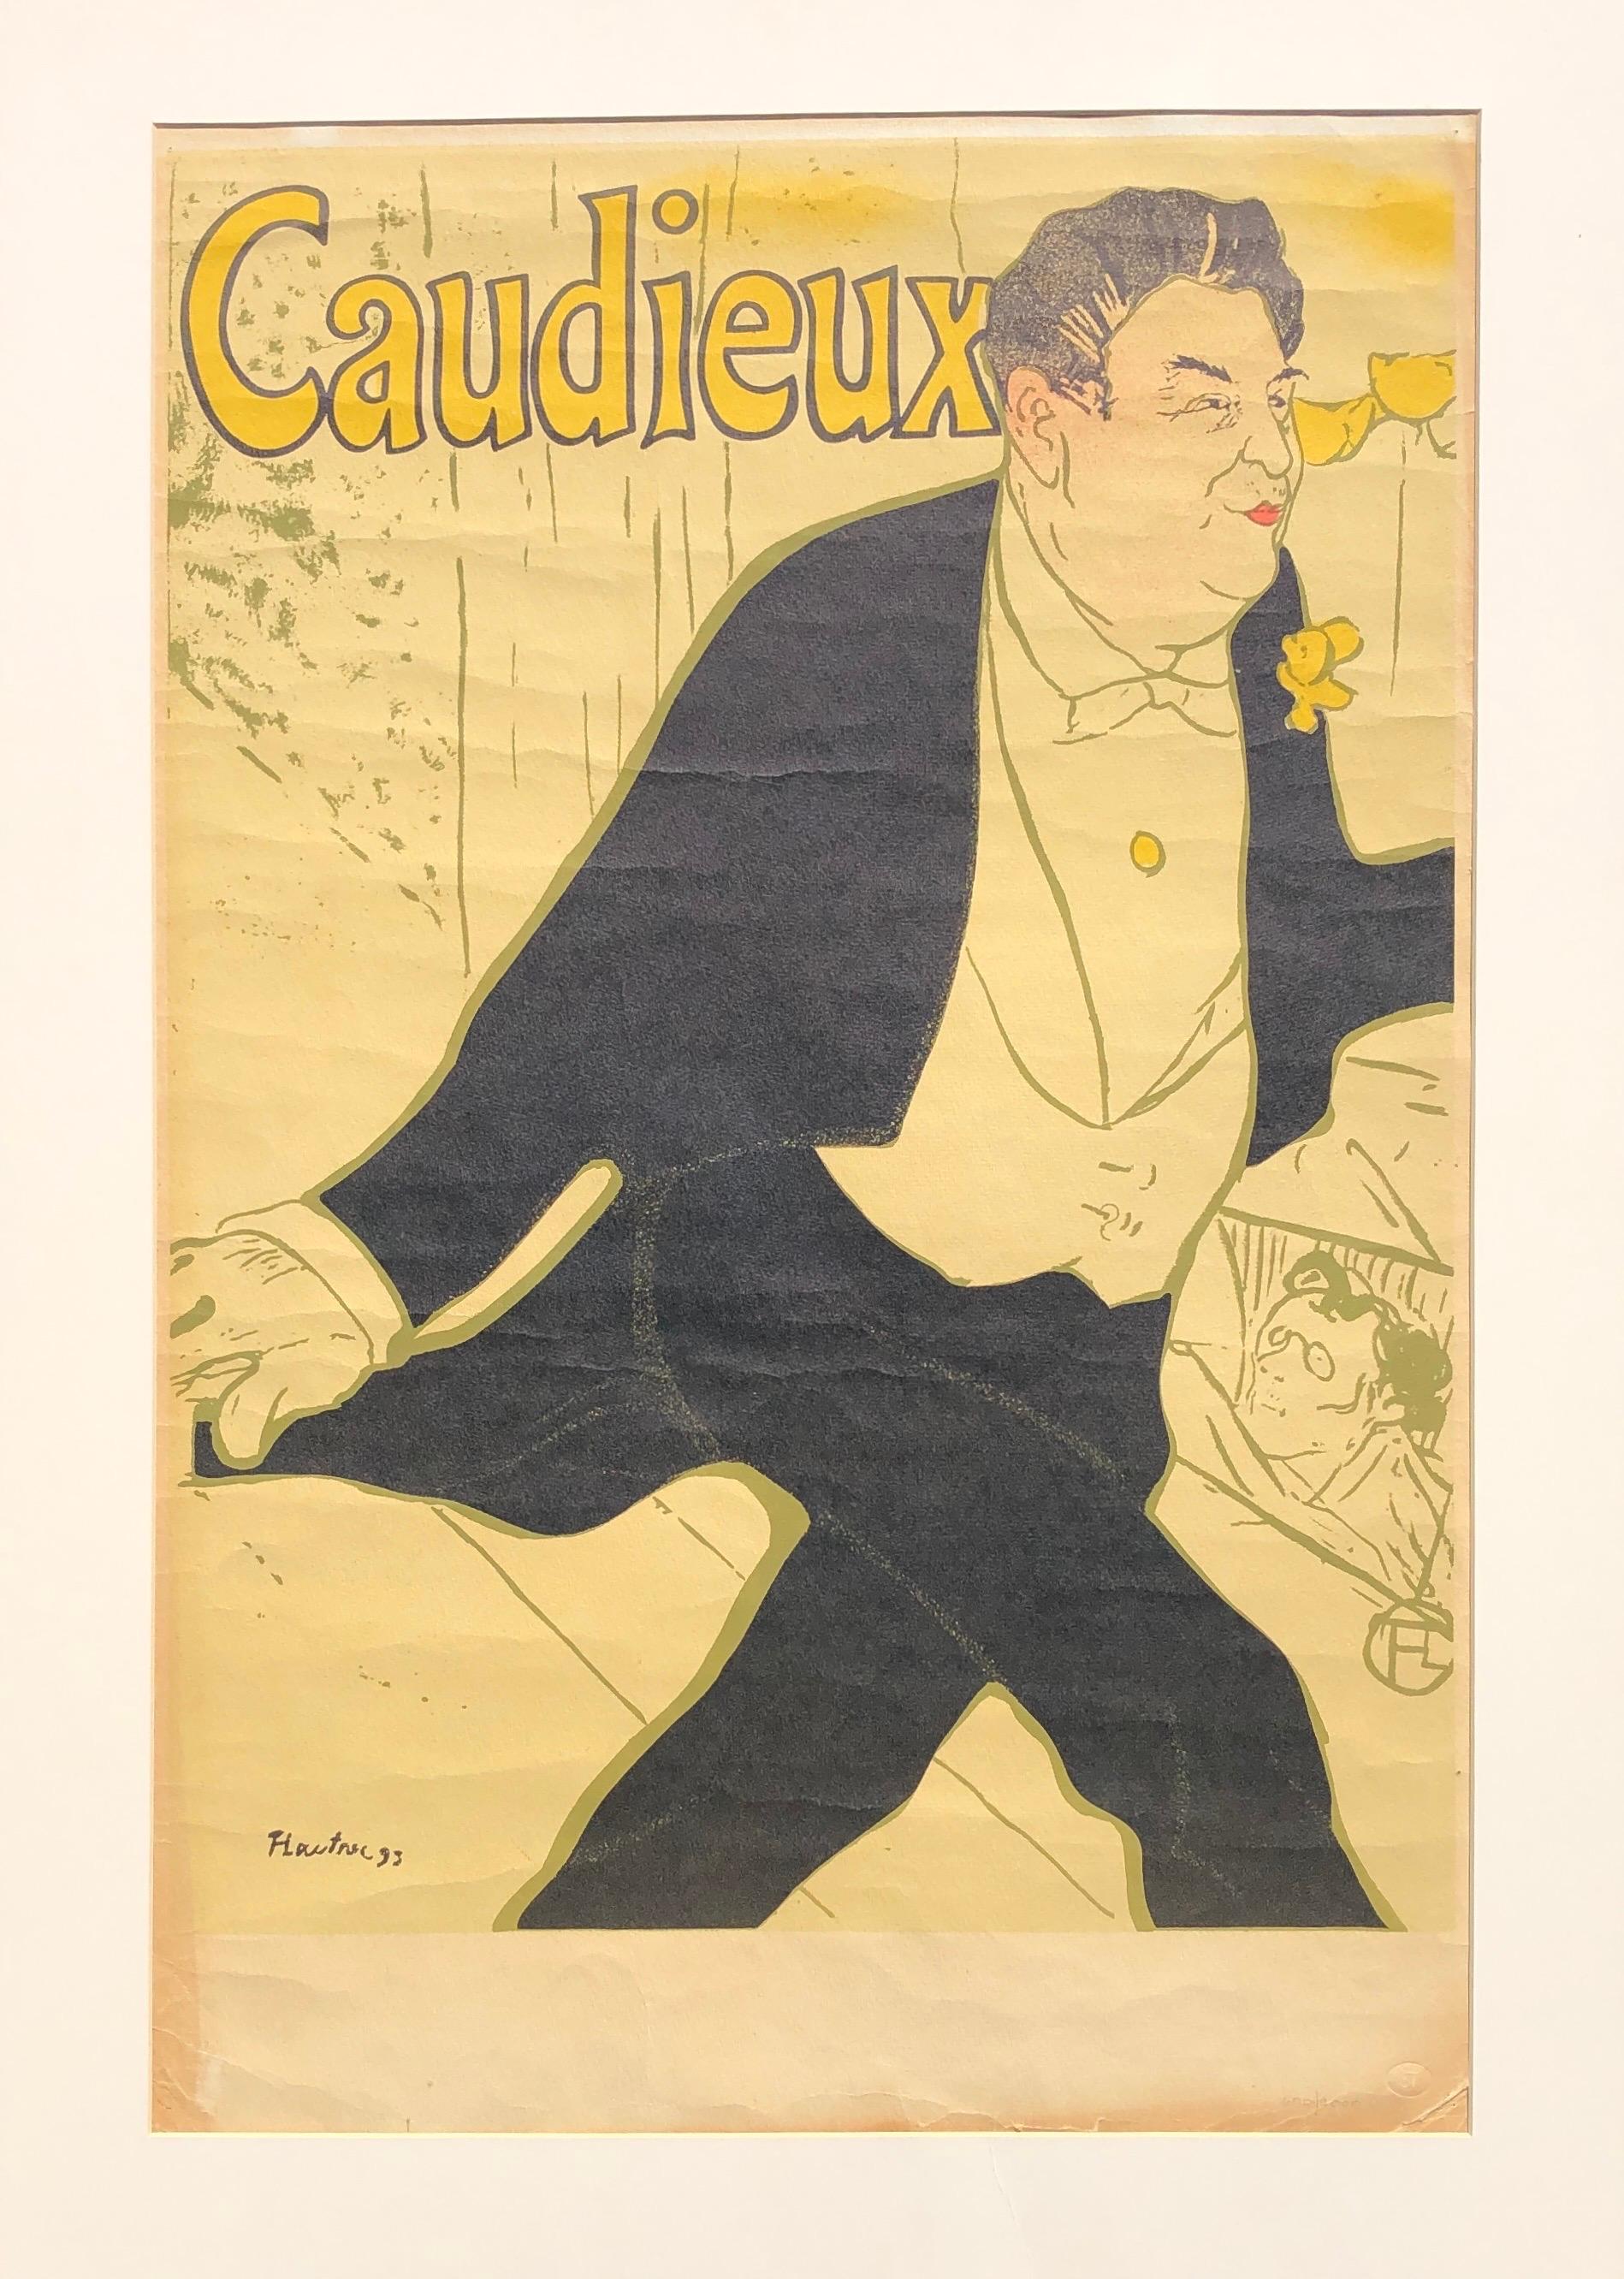 Cadieux - Print by Henri de Toulouse-Lautrec